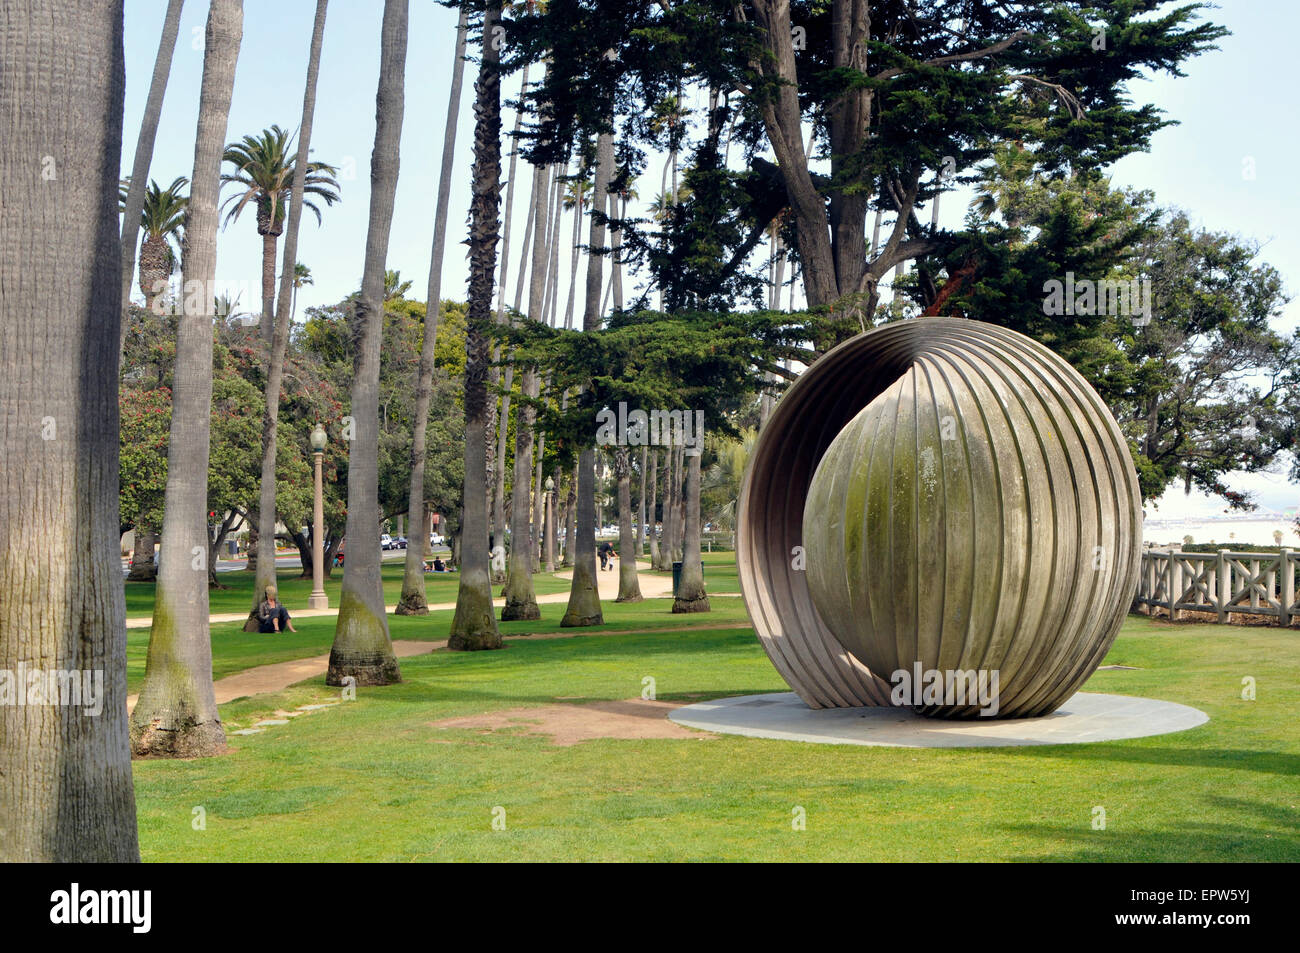 Santa Monica, 25 acri in Palisades Park, scultura "gestazione' Foto Stock